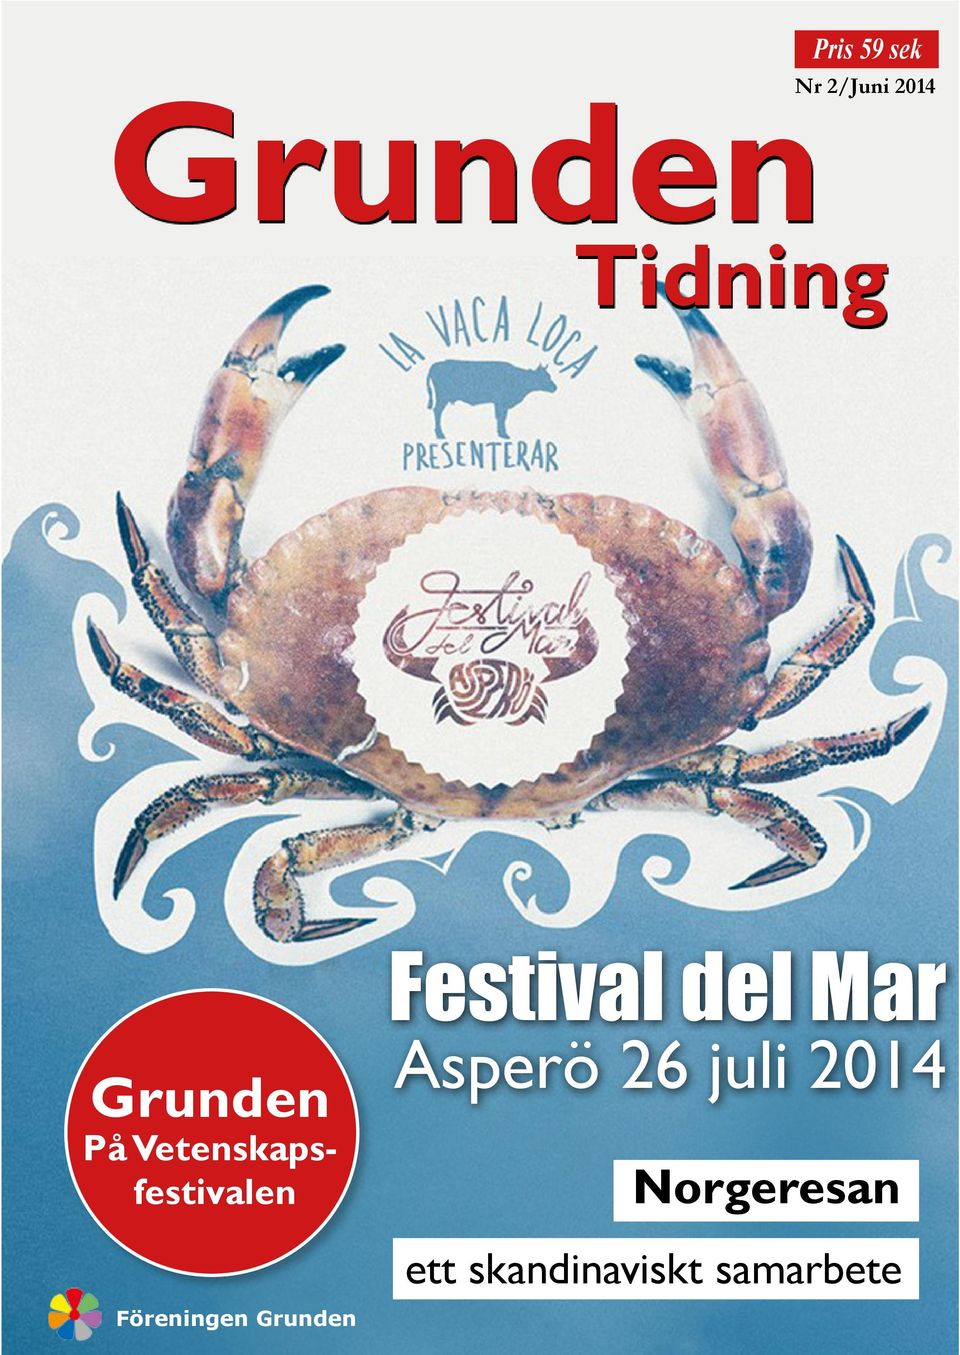 Grunden Festival del Mar Asperö 26 juli